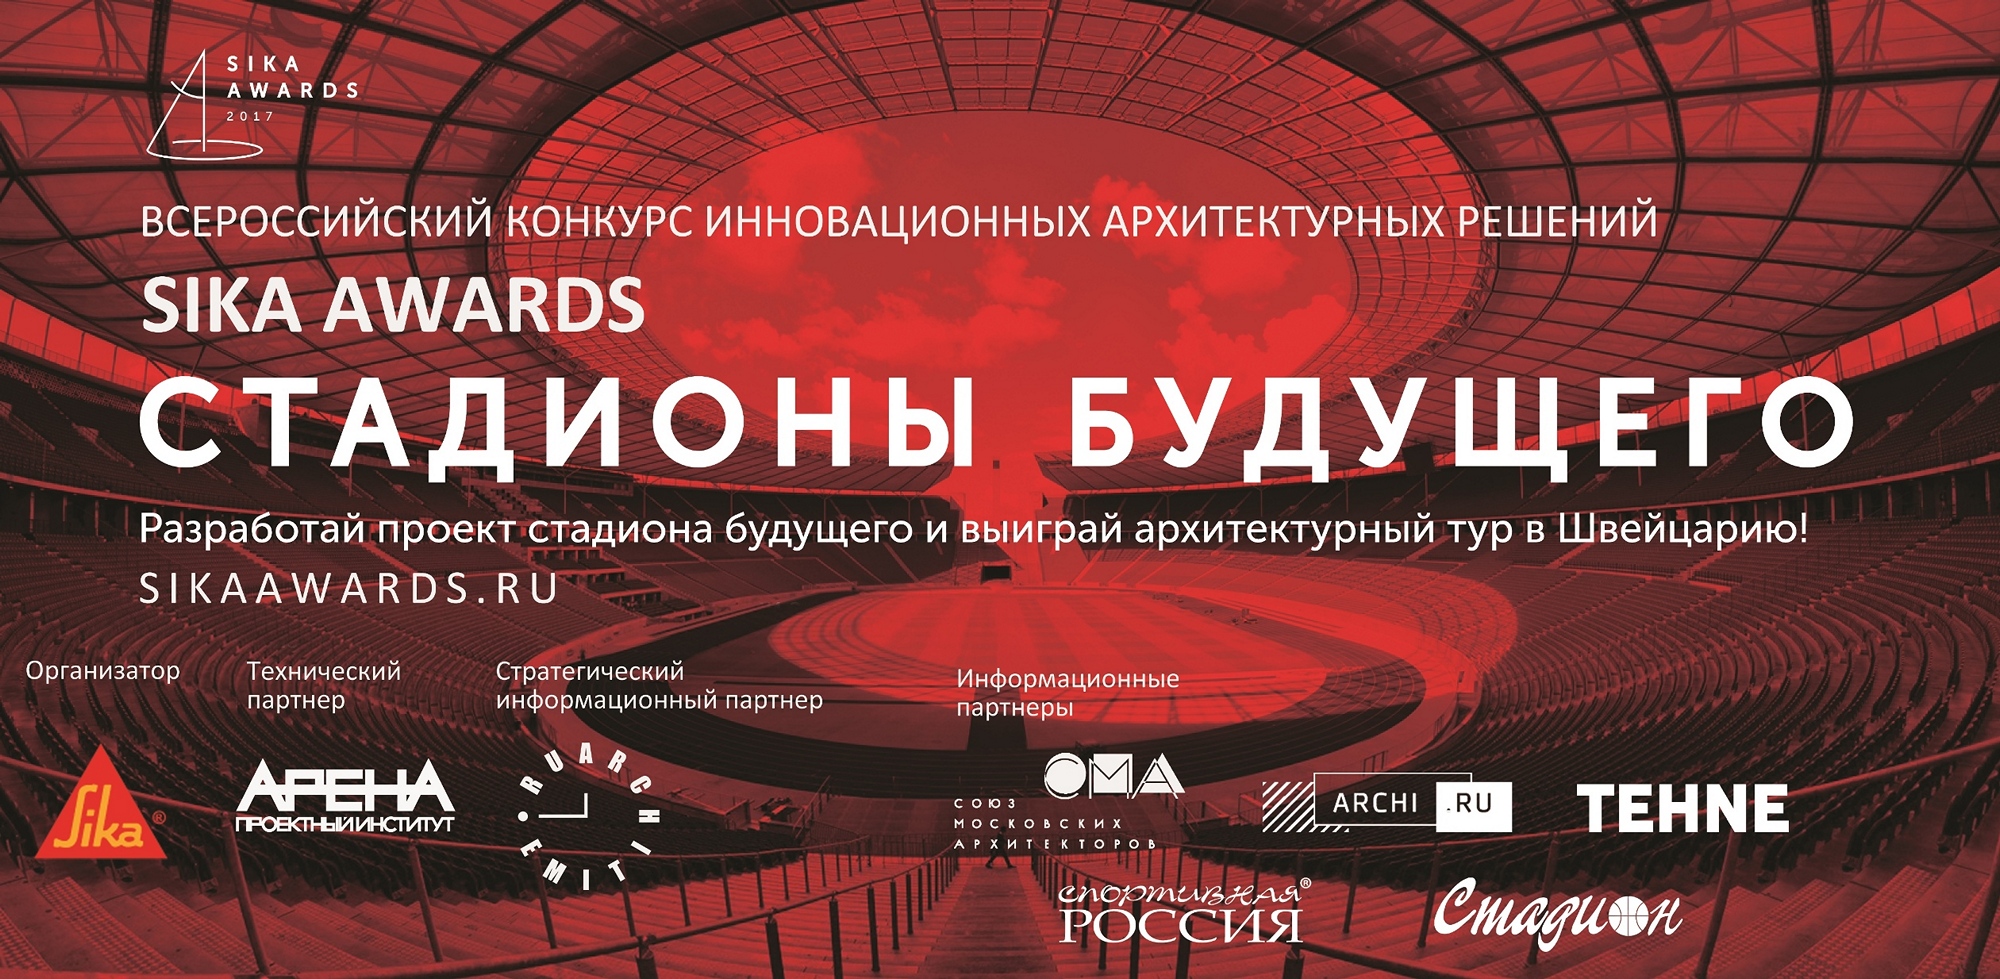 Всероссийский конкурс инновационных архитектурных решений Sika Awards 2017